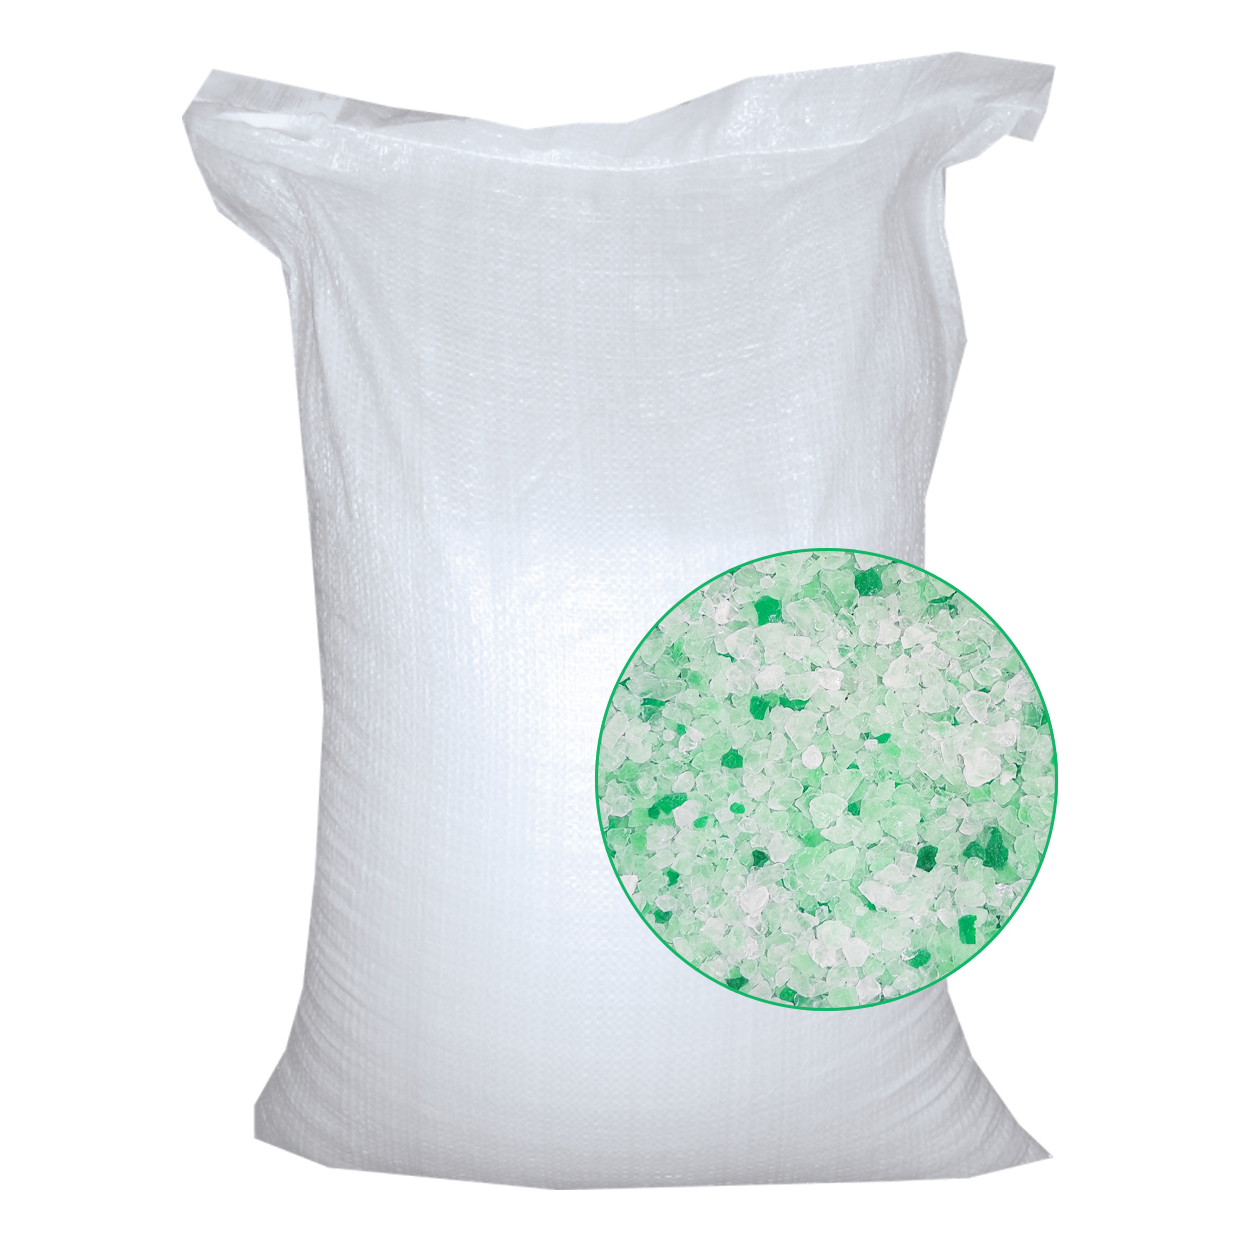 PetFood силикагелевый антибактериальный наполнитель, зеленые гранулы (50 л)